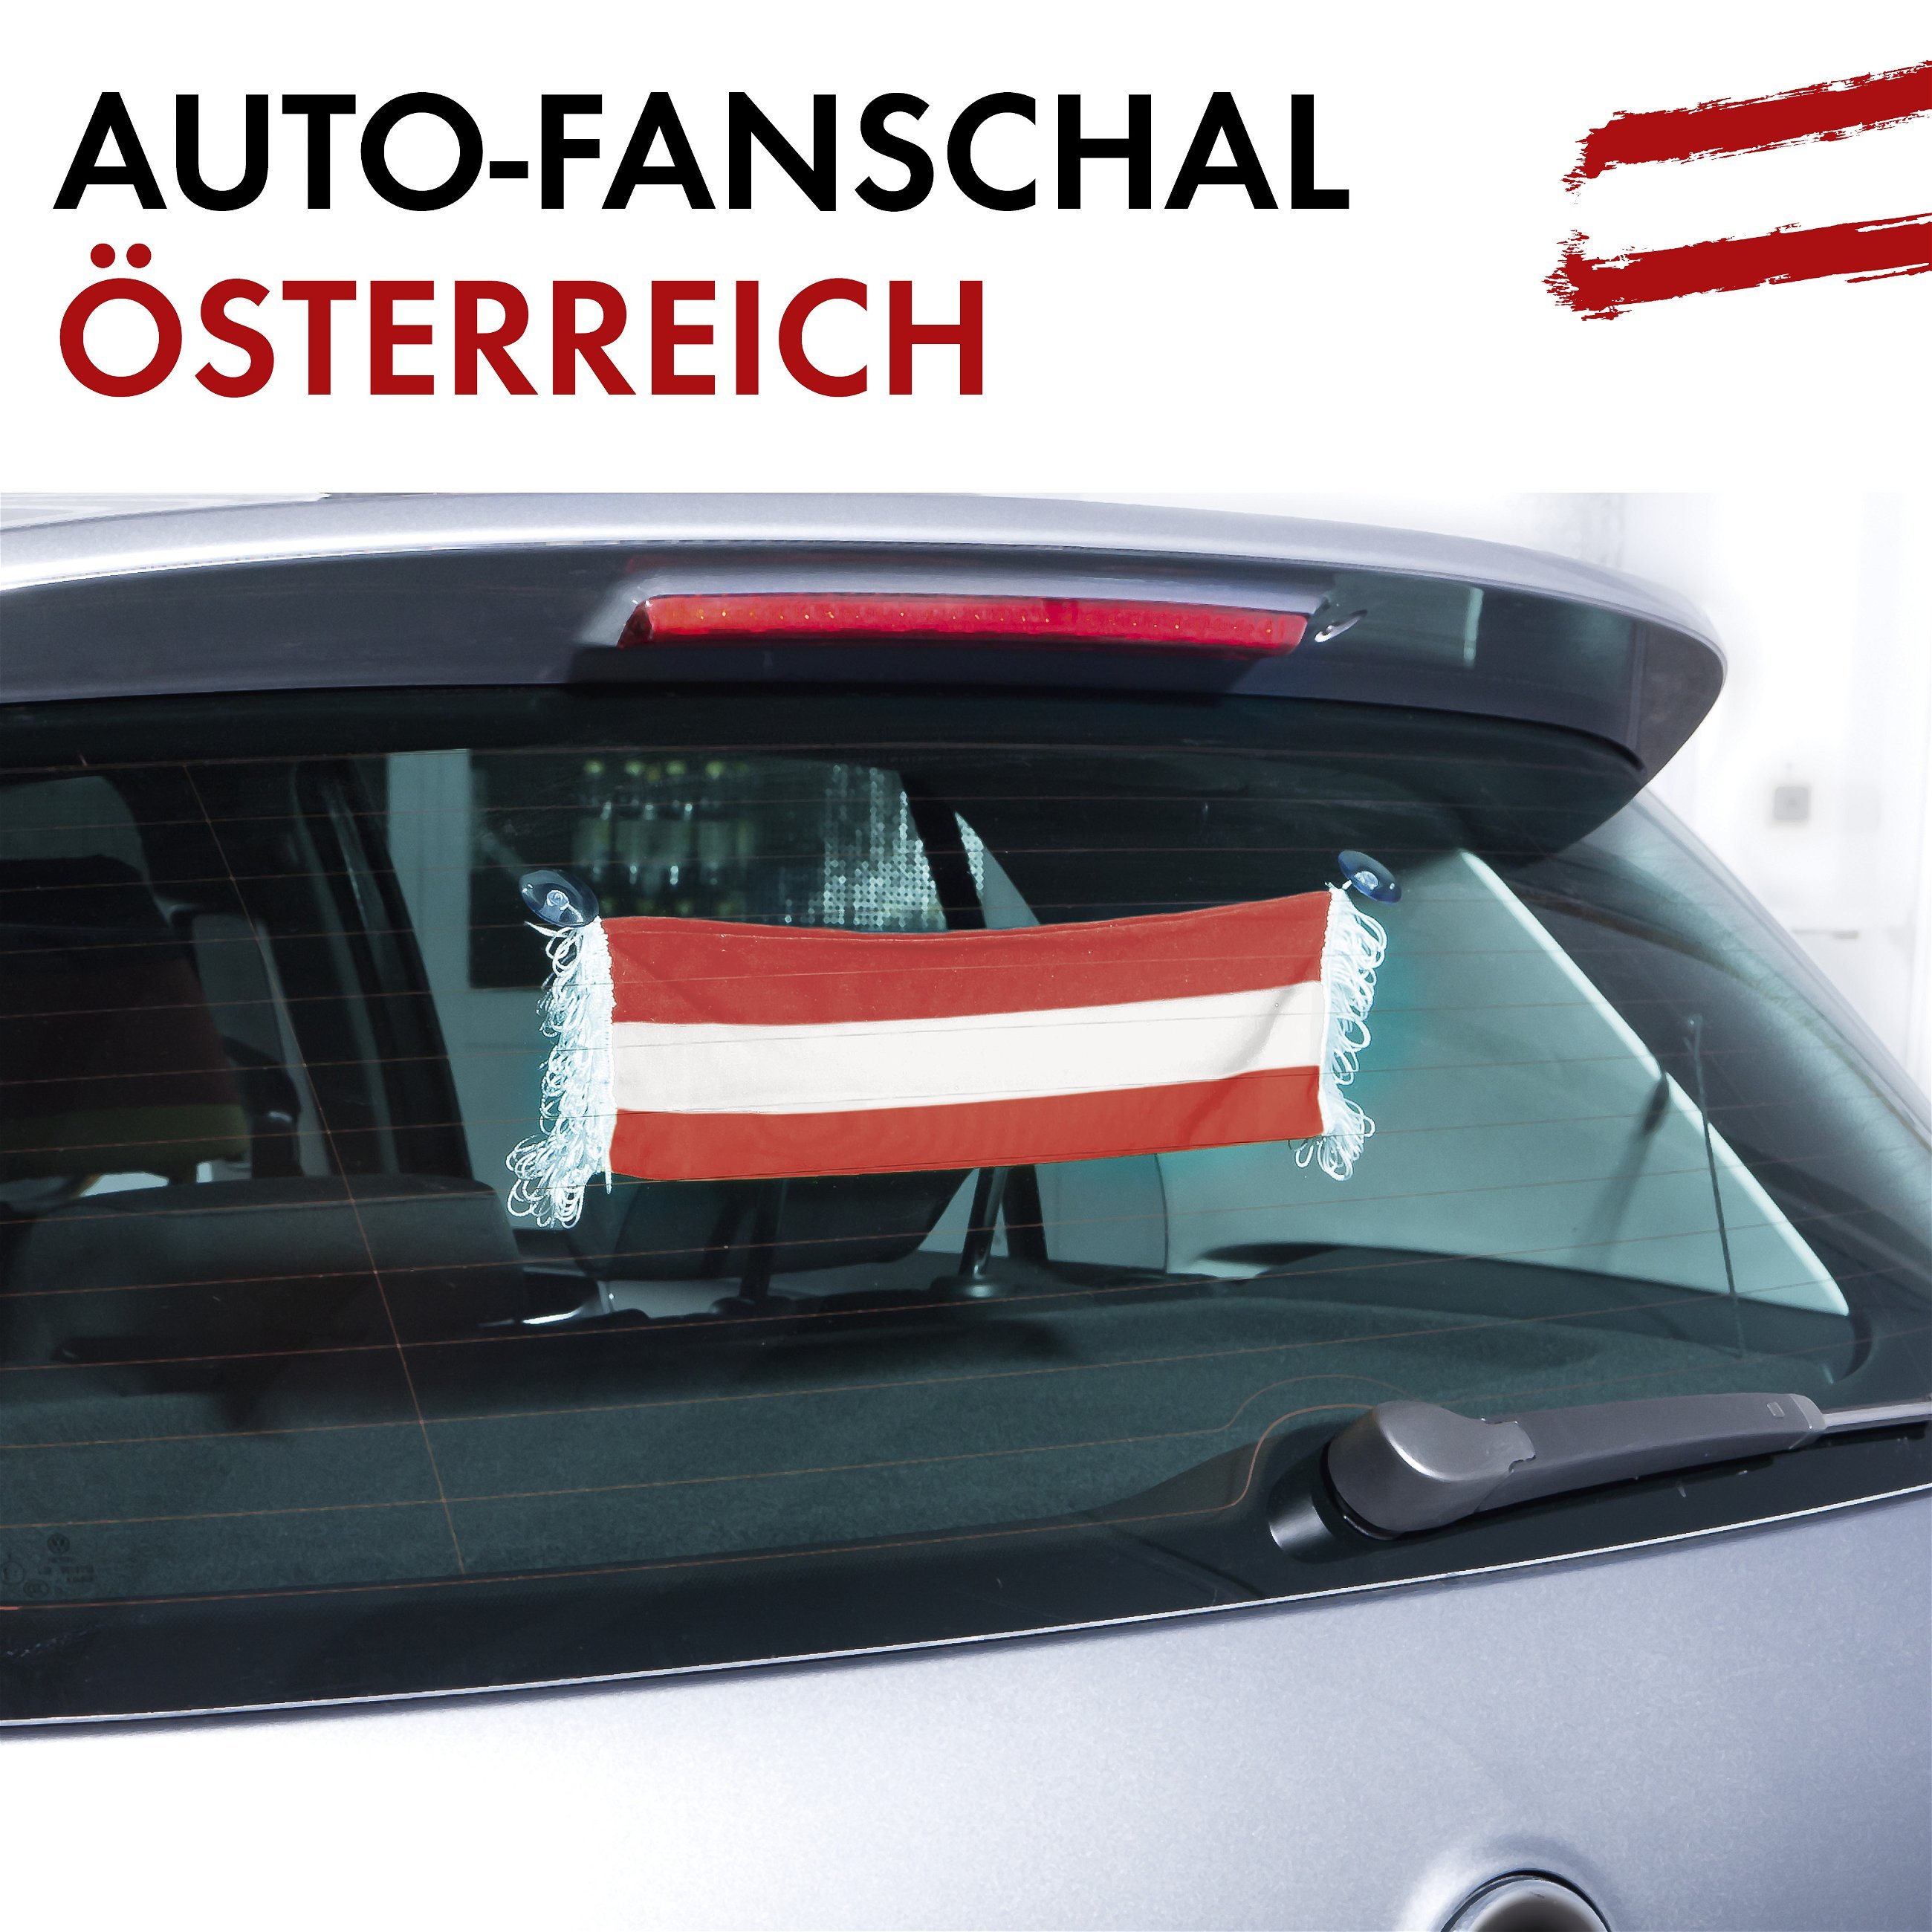 Auto-Fanschal Österreich mit Saugnäpfen 9 x 45 cm